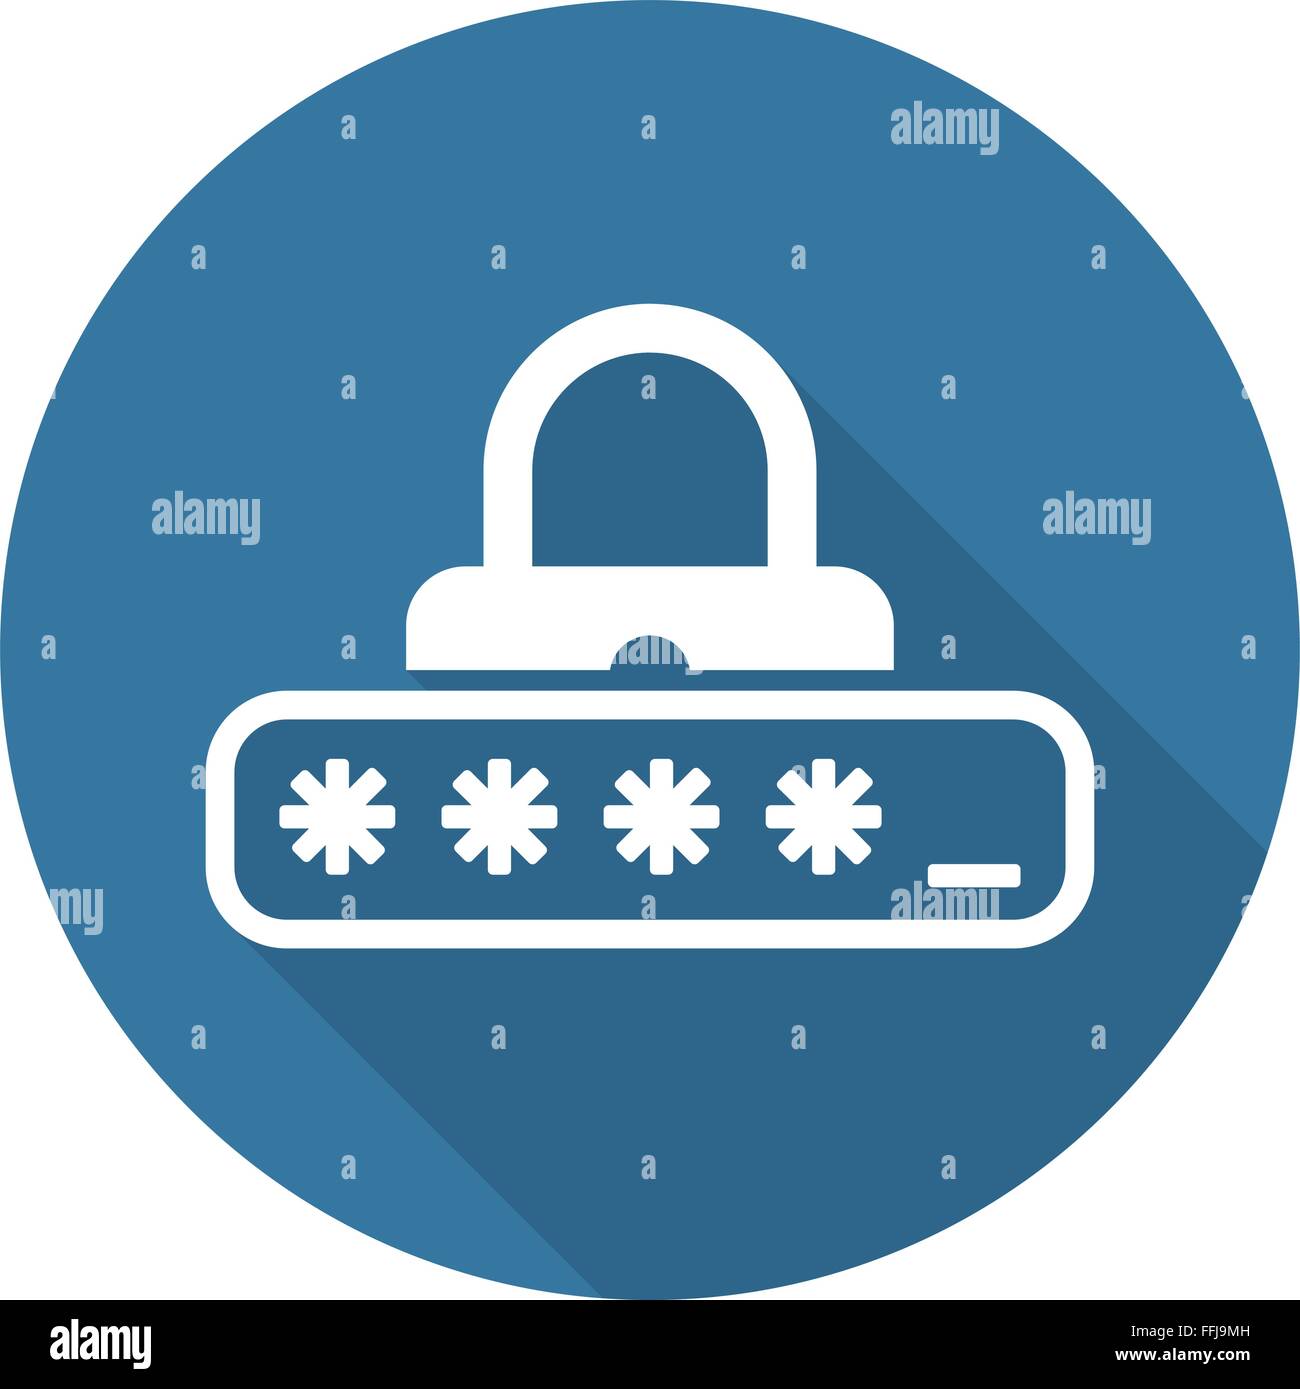 La protezione tramite password e la relativa icona. Design piatto. Illustrazione Vettoriale